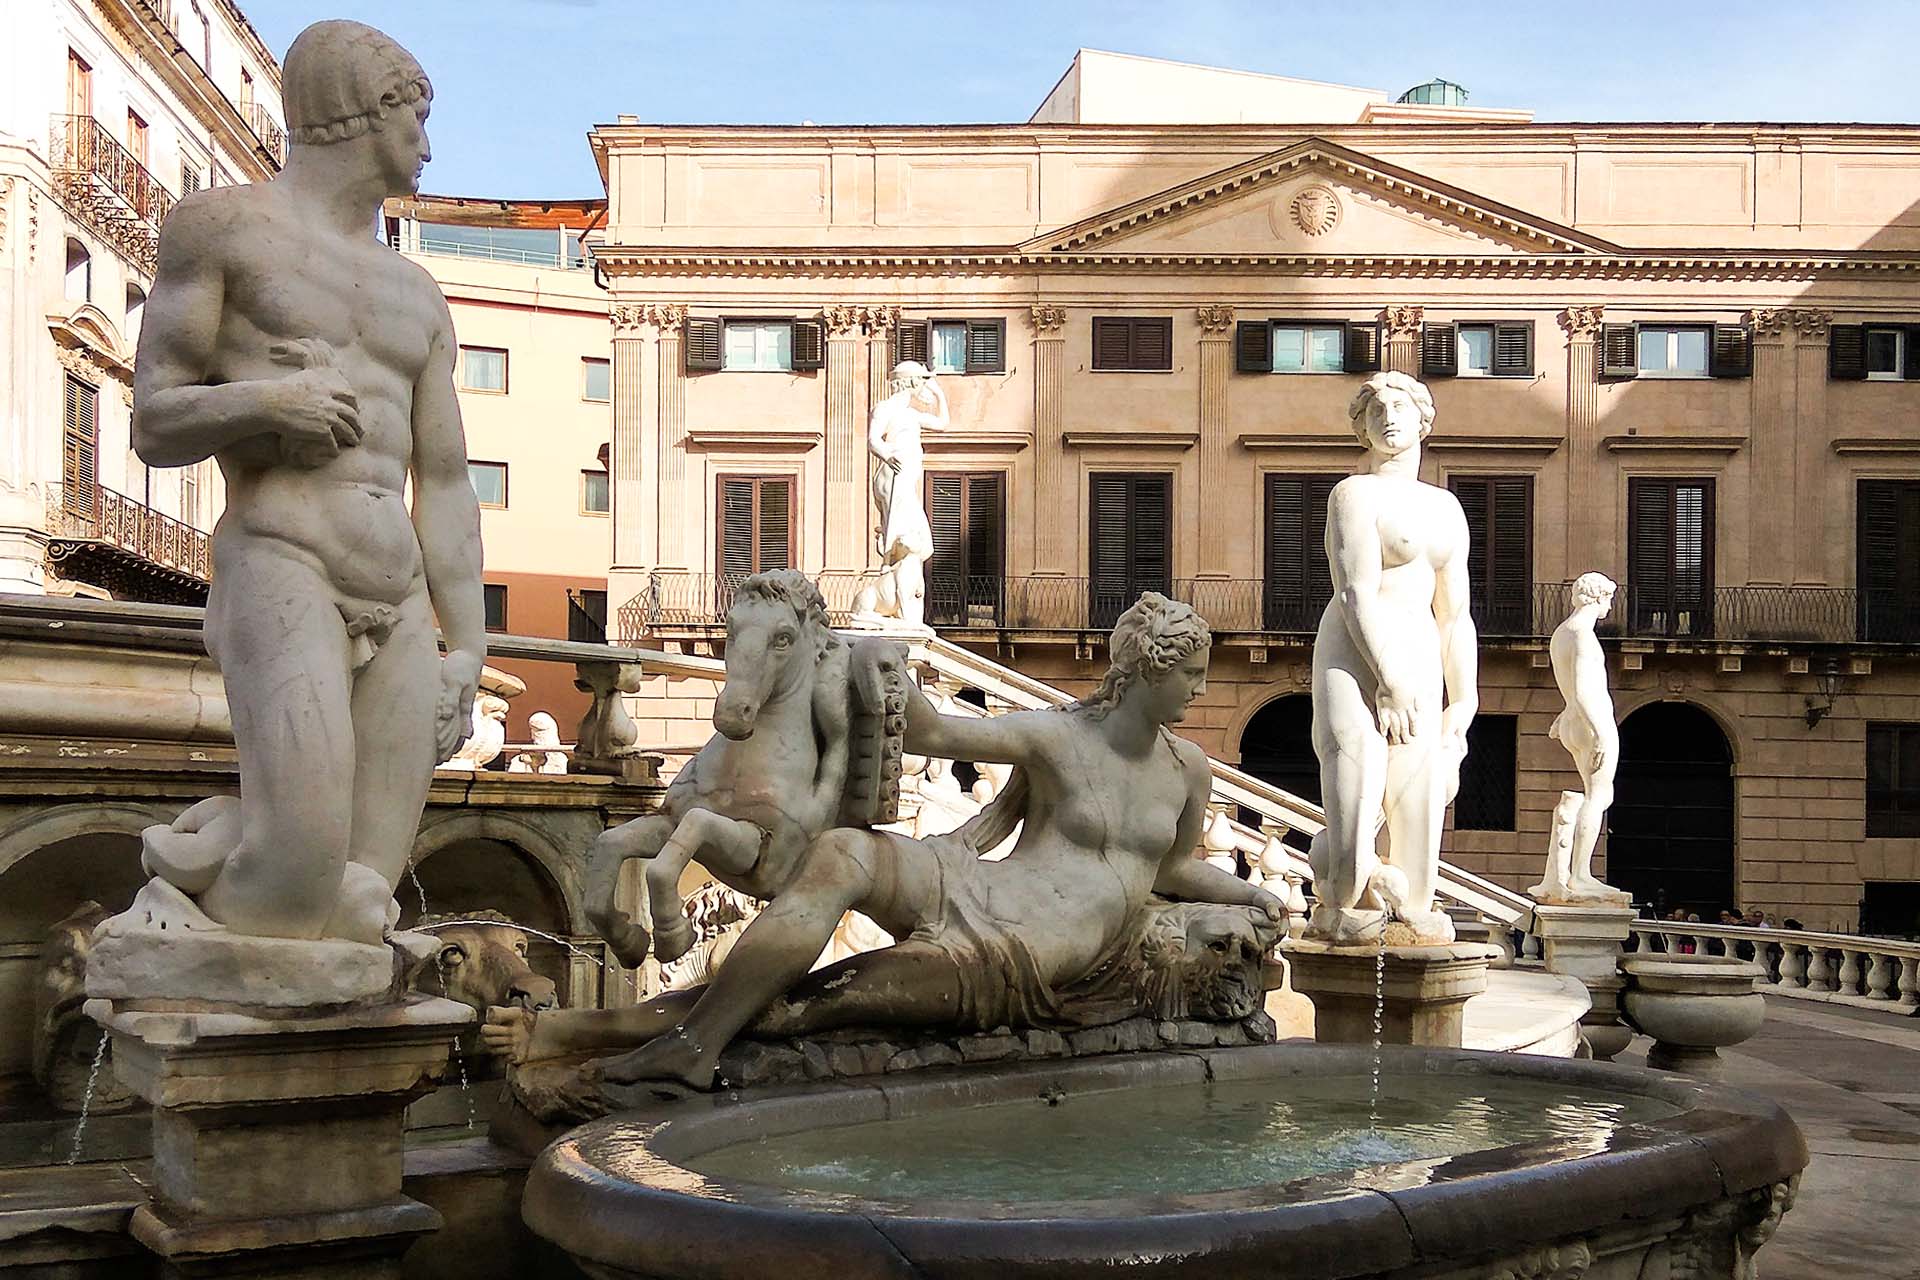 Statues of the Fontana Pretoria in Palermo